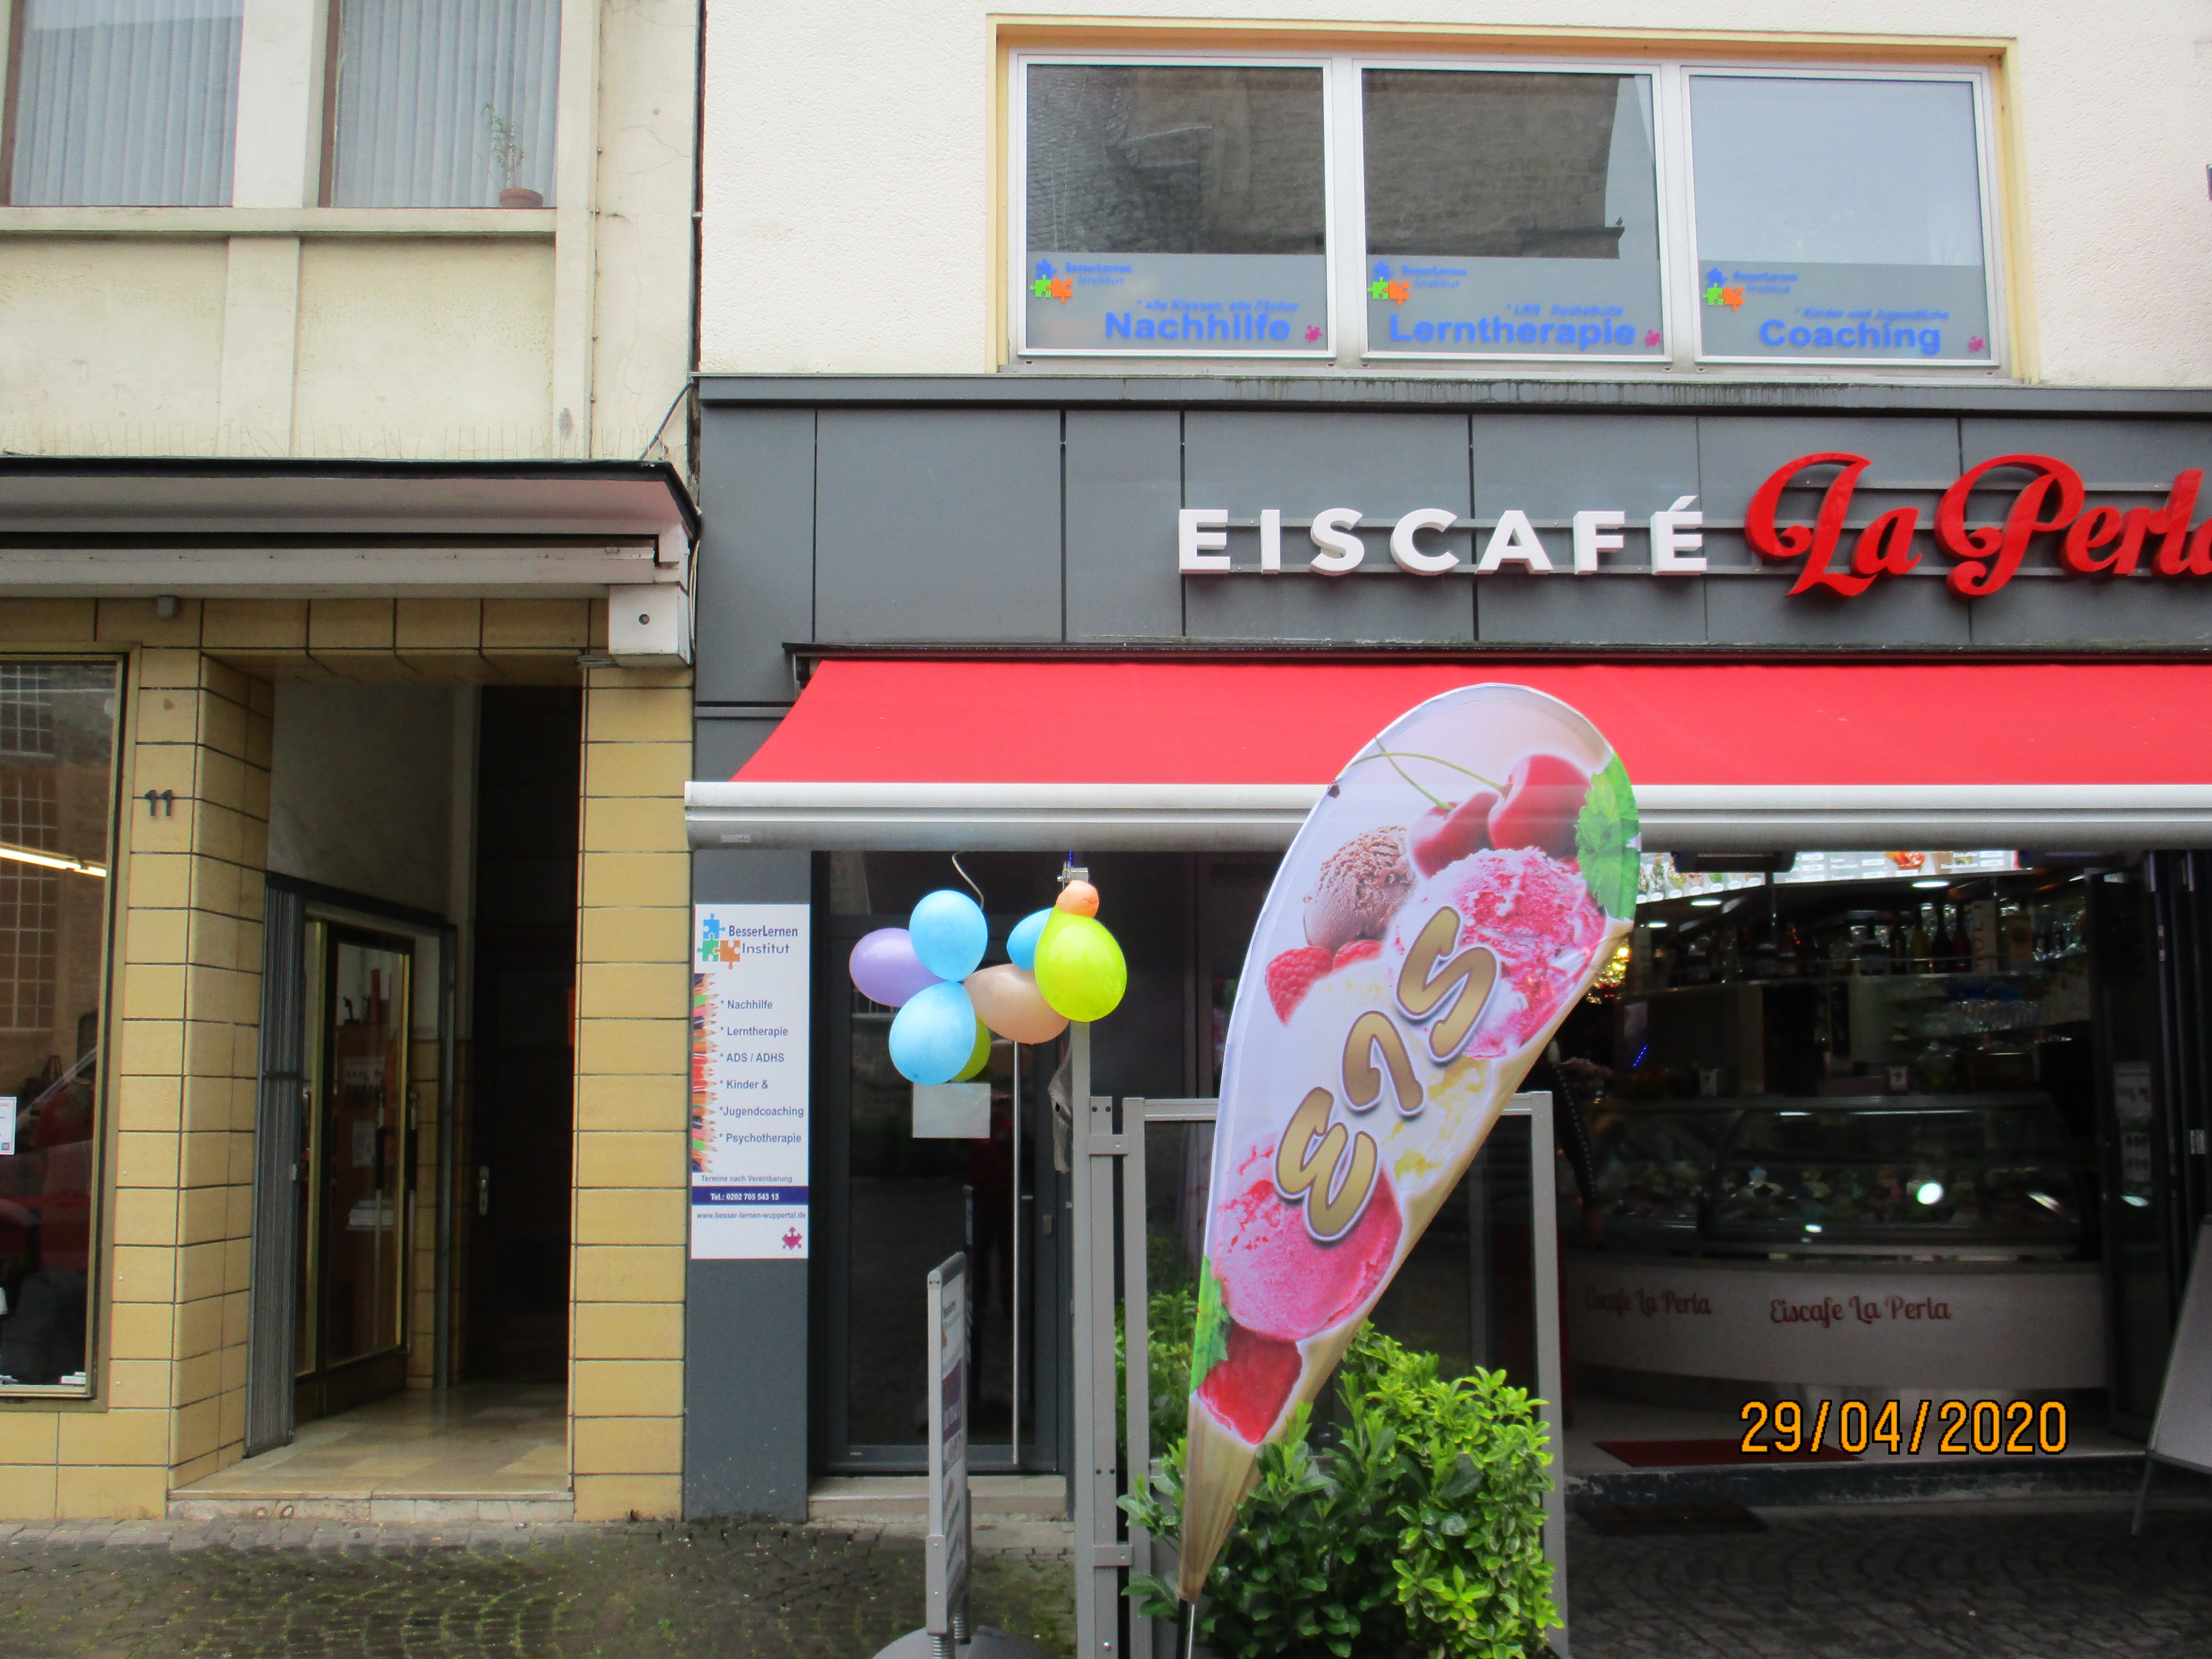 Neuer Markisenstoff für das Eiscafé La Perla in Wuppertal